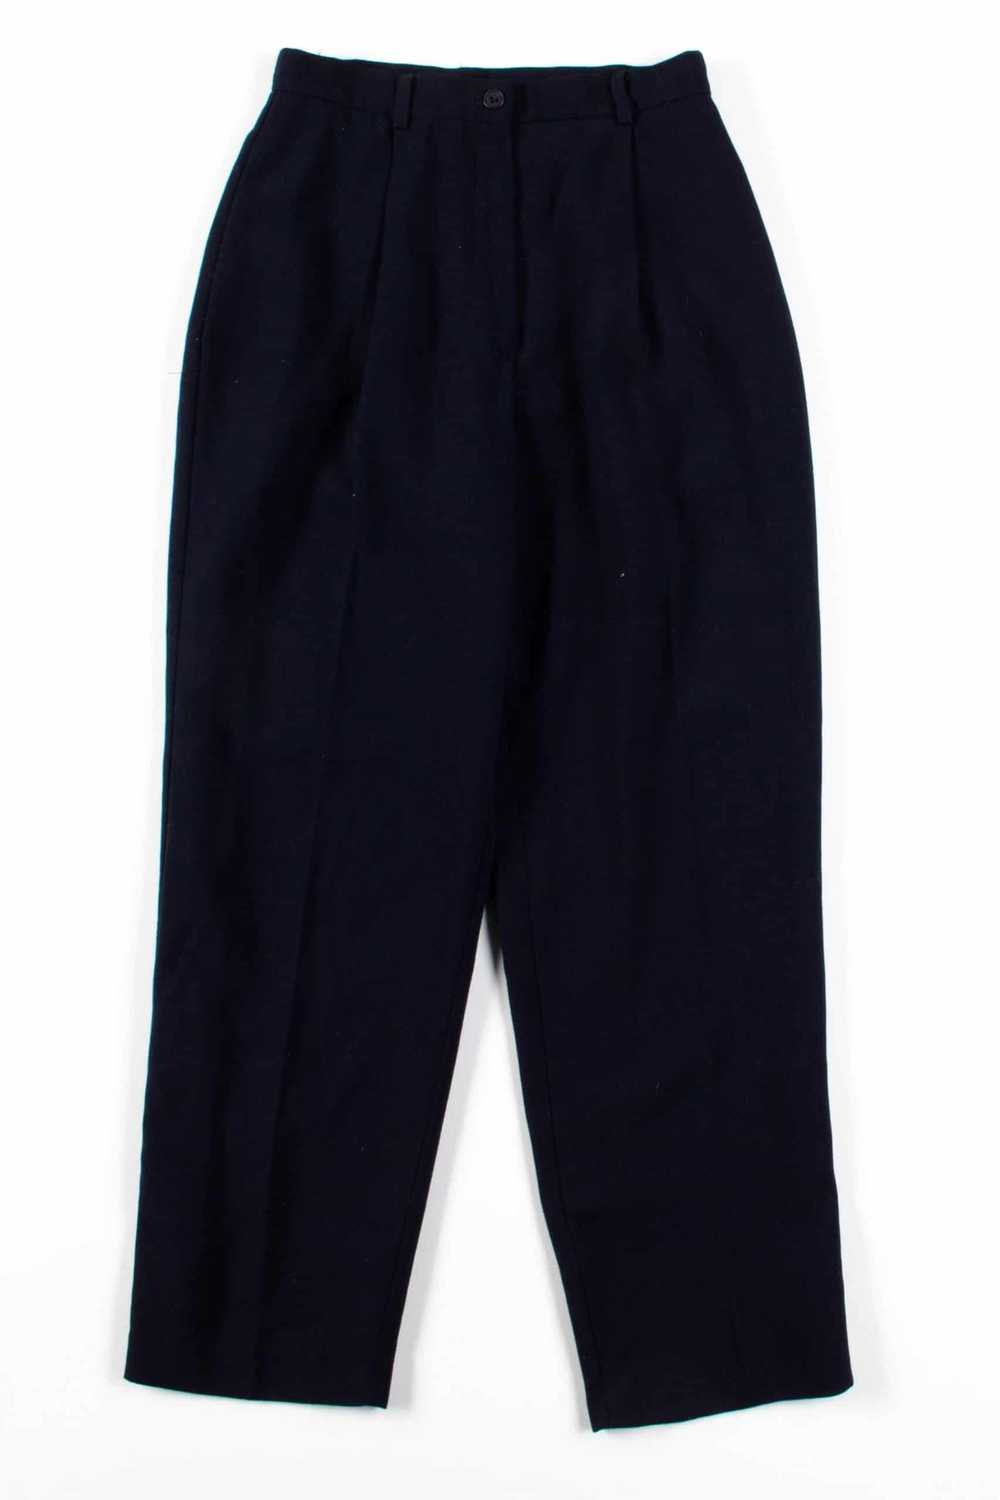 Black Pleated Pants (sz. 4) - image 2